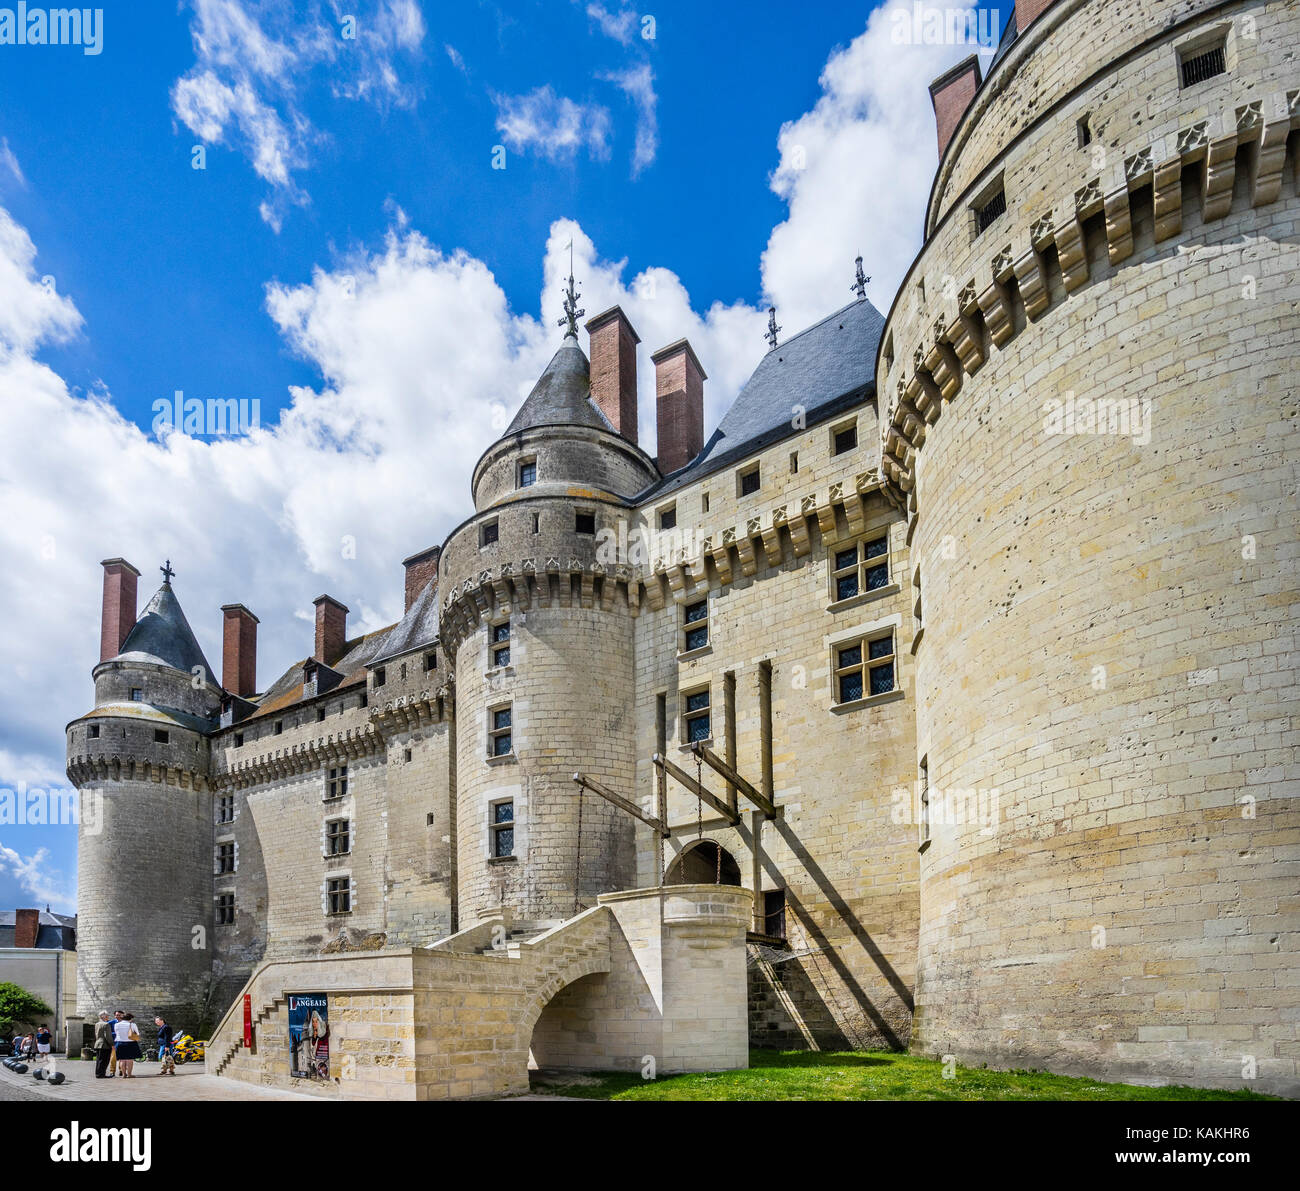 Francia, Indre-et-Loire departamento, Touraine, Château de Langeais, vista de los enormes muros y torres y el puente levadizo entrada a la medieval tardía c Foto de stock